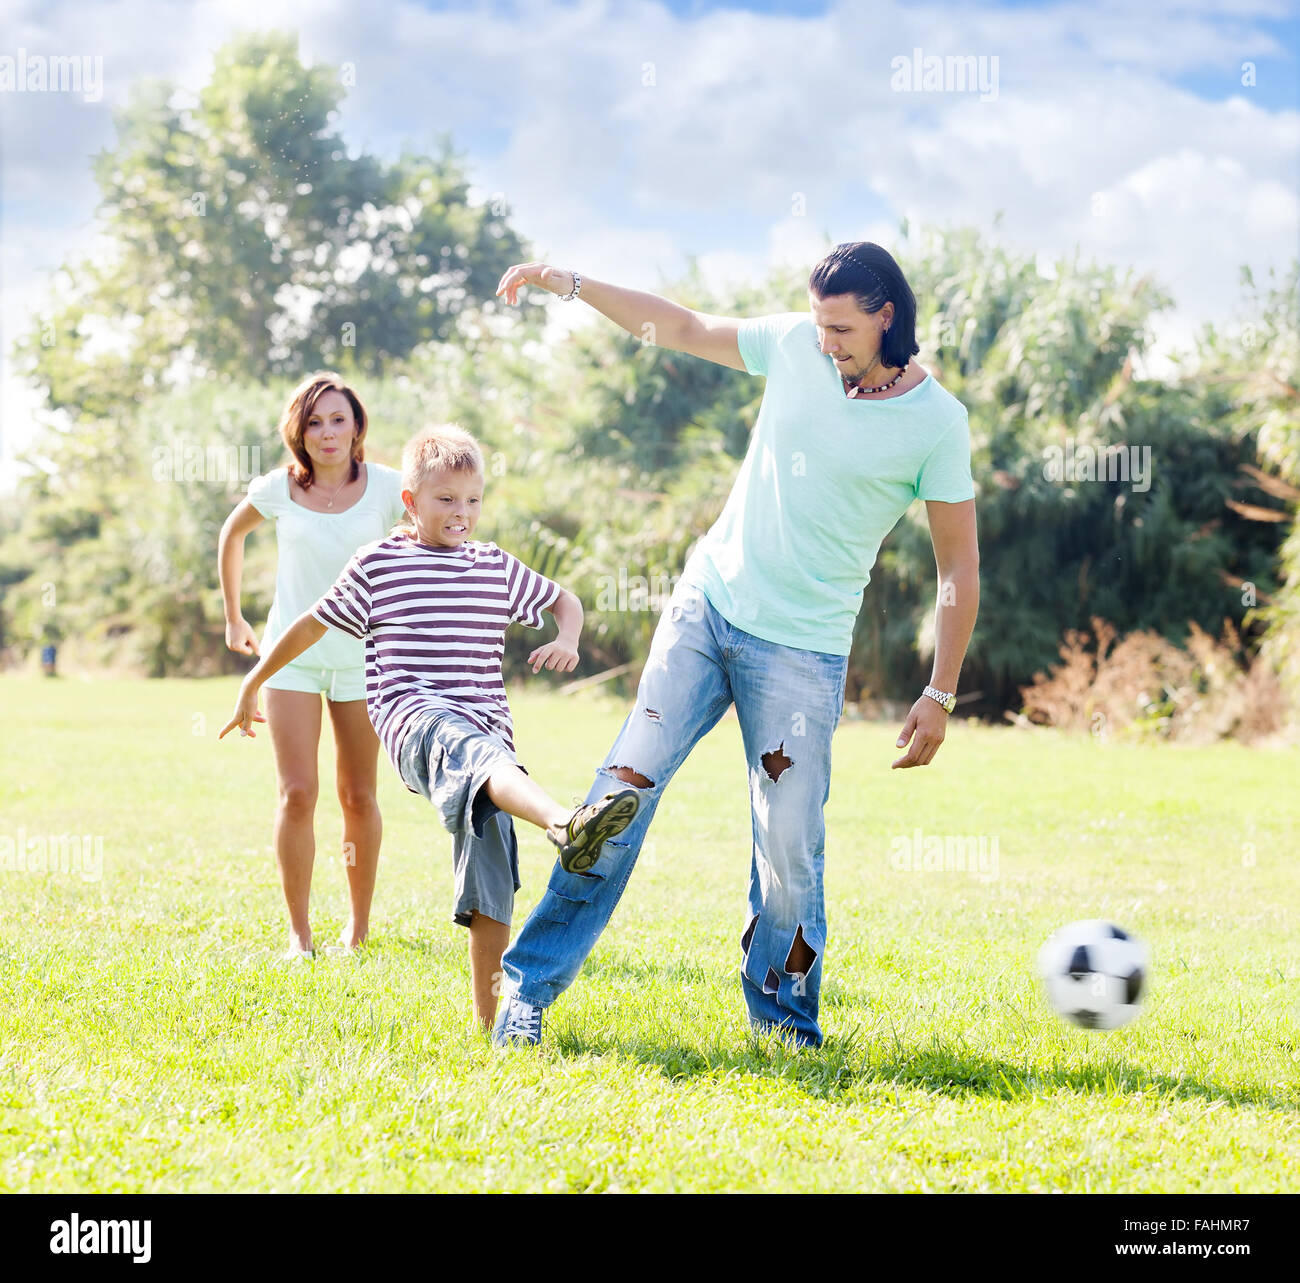 Paar mittleren Alters mit jungen spielen mit Fußball Sommer Pari Stockfoto